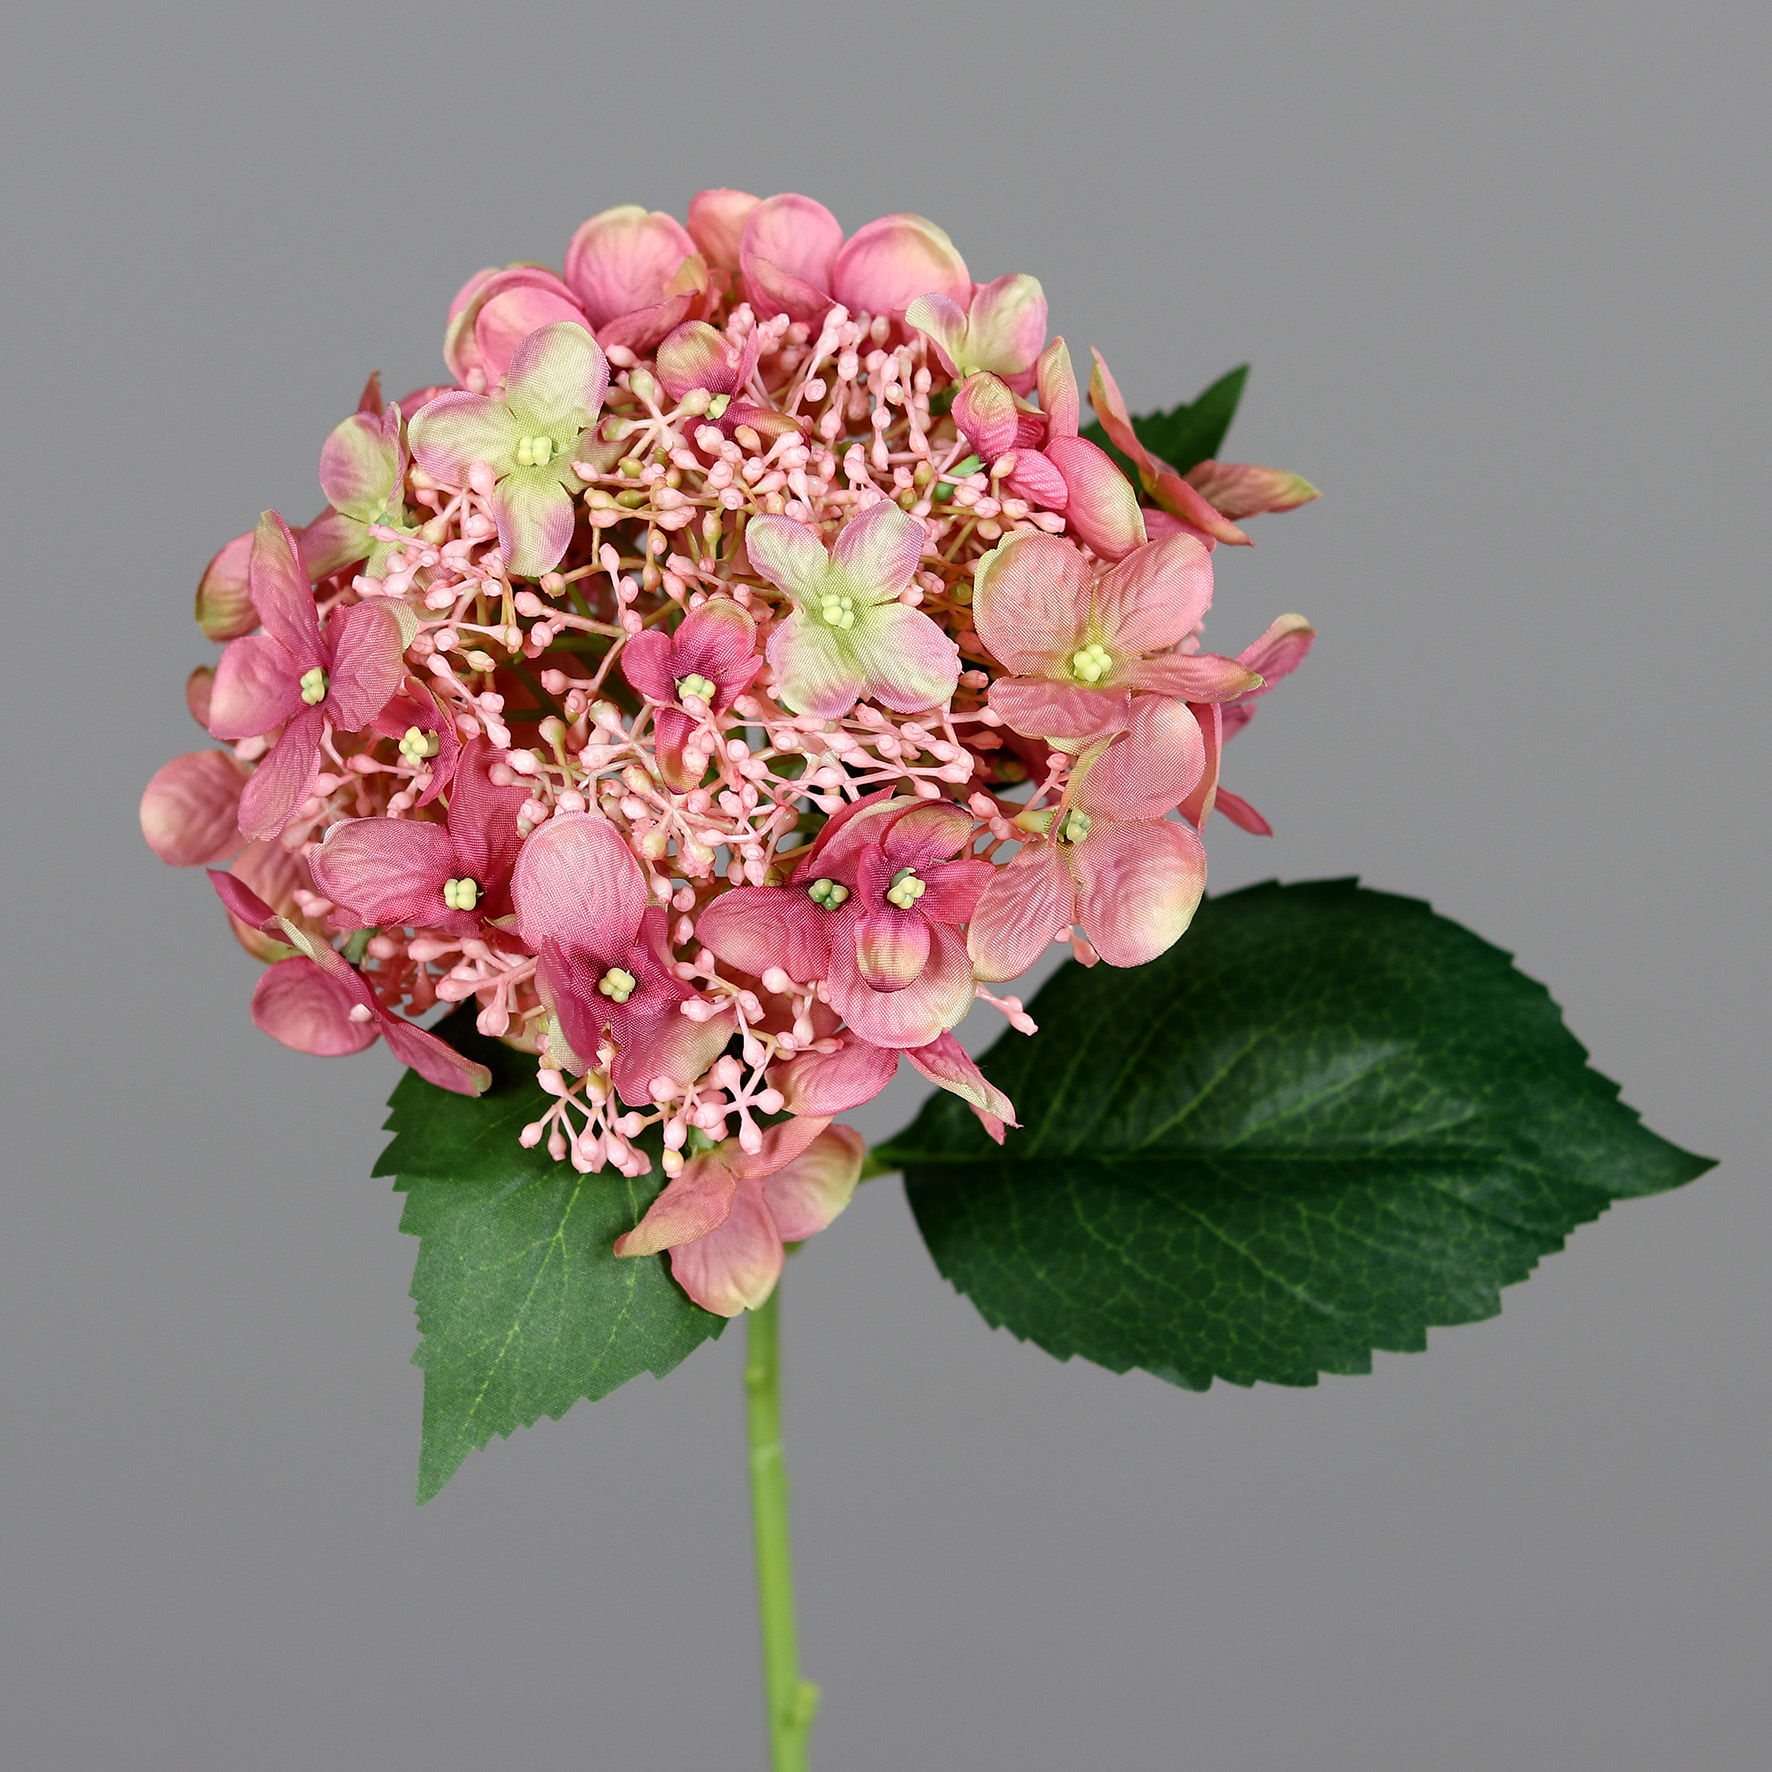 Sommer Hortensie Hortensien Blumen 52cm DP rosa künstliche Kunstlbumen Hydrangea